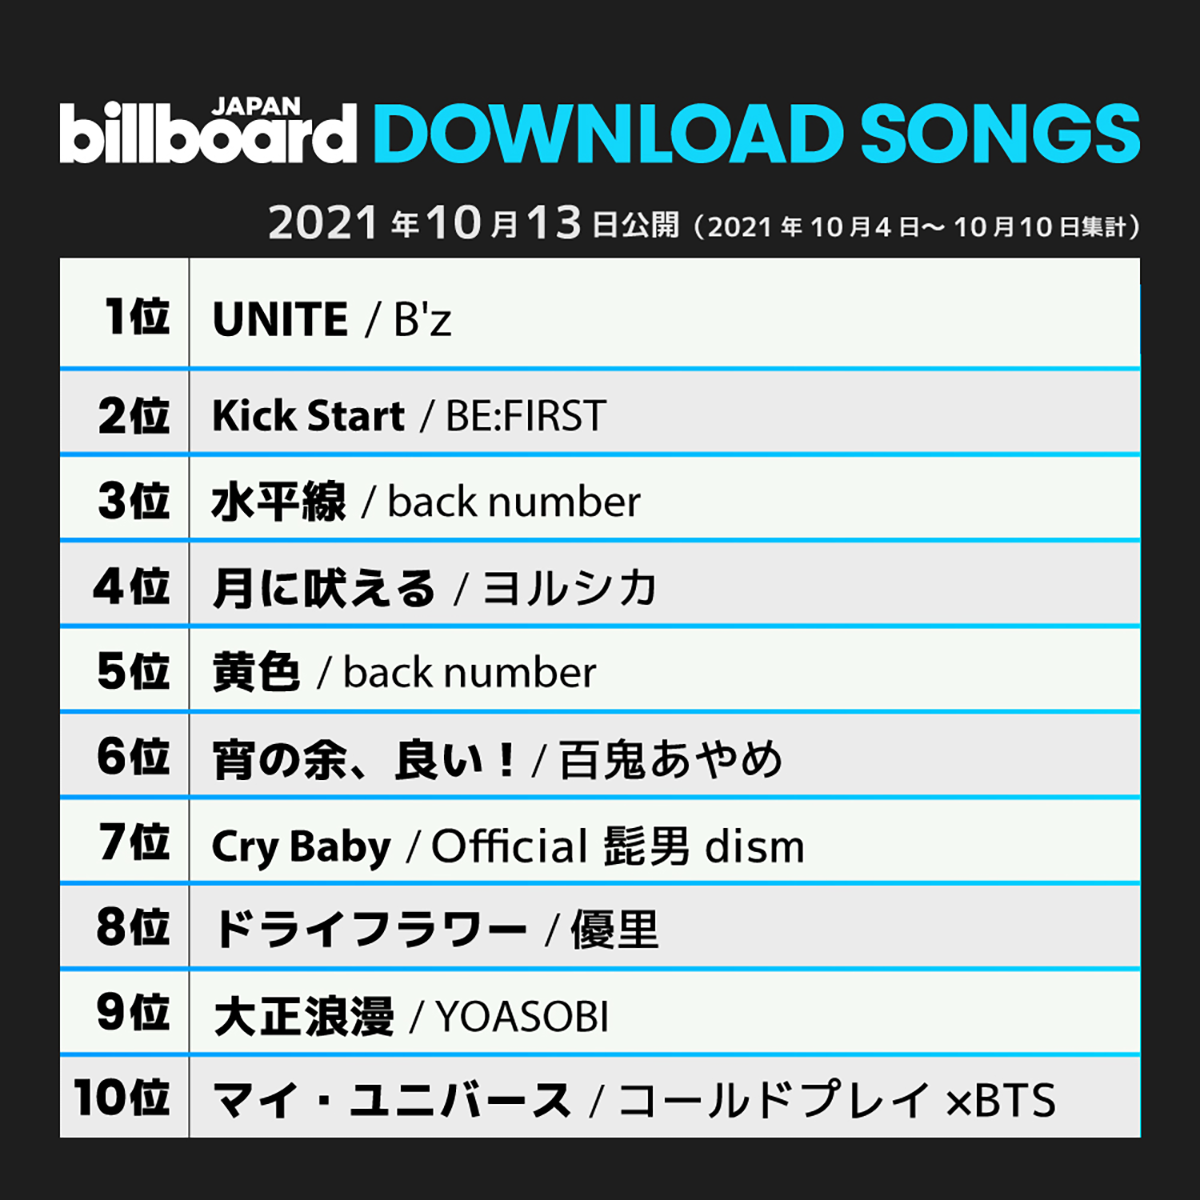 B'z「UNITE」が1位を獲得した2021年10月13日公開（集計期間：2021年10月4日～10月10日）のBillboard JAPANダウンロード・ソング・チャート“Download Songs”